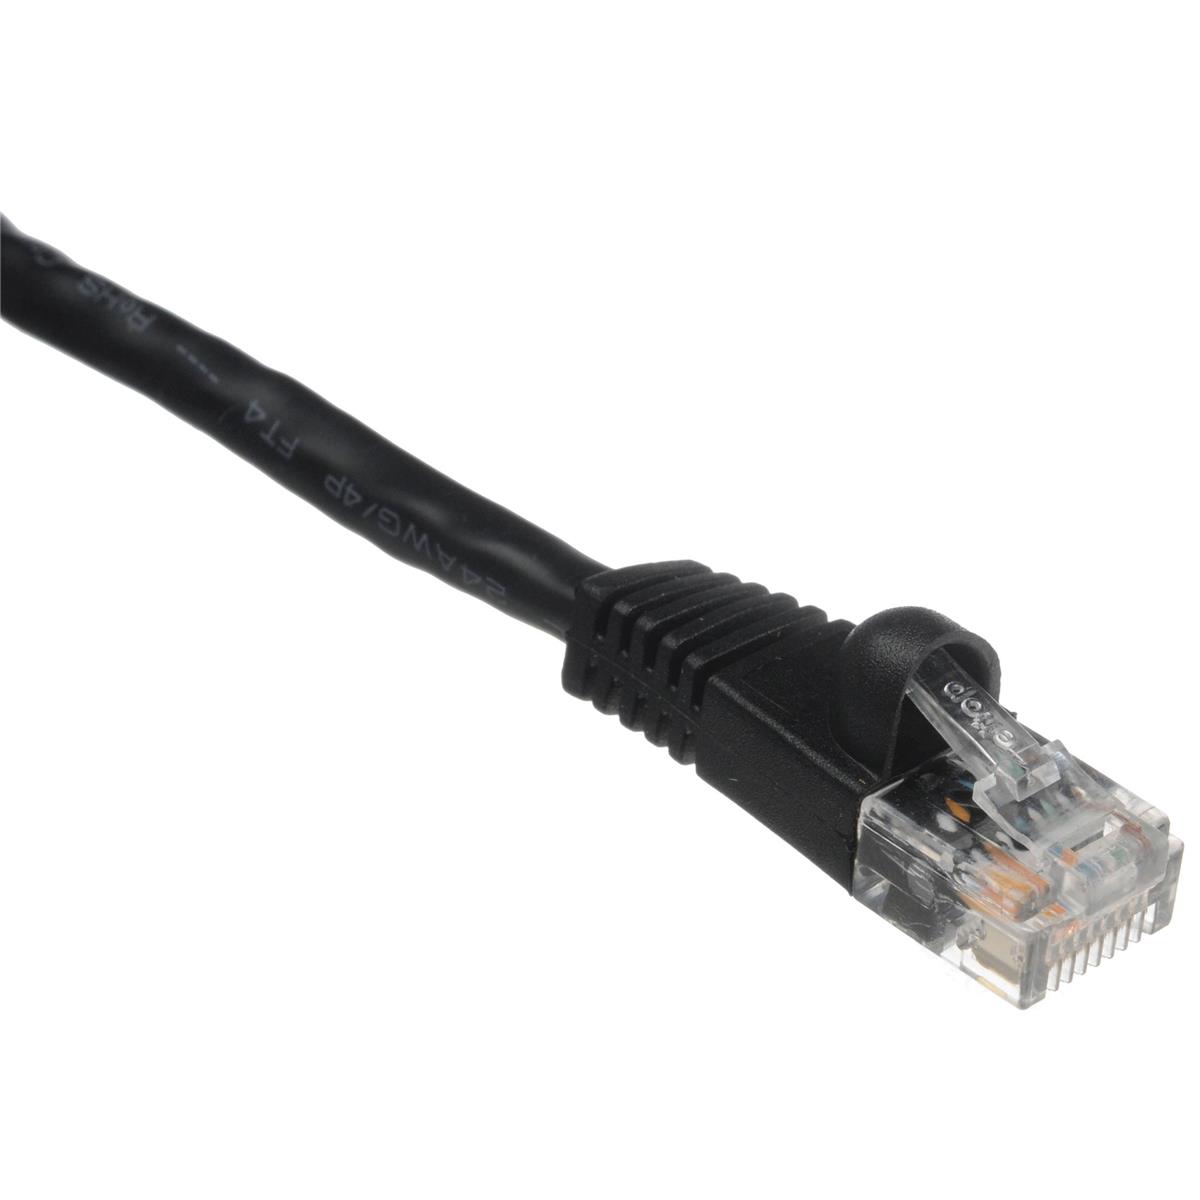 Комплексный 7-дюймовый патч-кабель Cat5e 350 МГц, черный #CAT5-350-7BLK